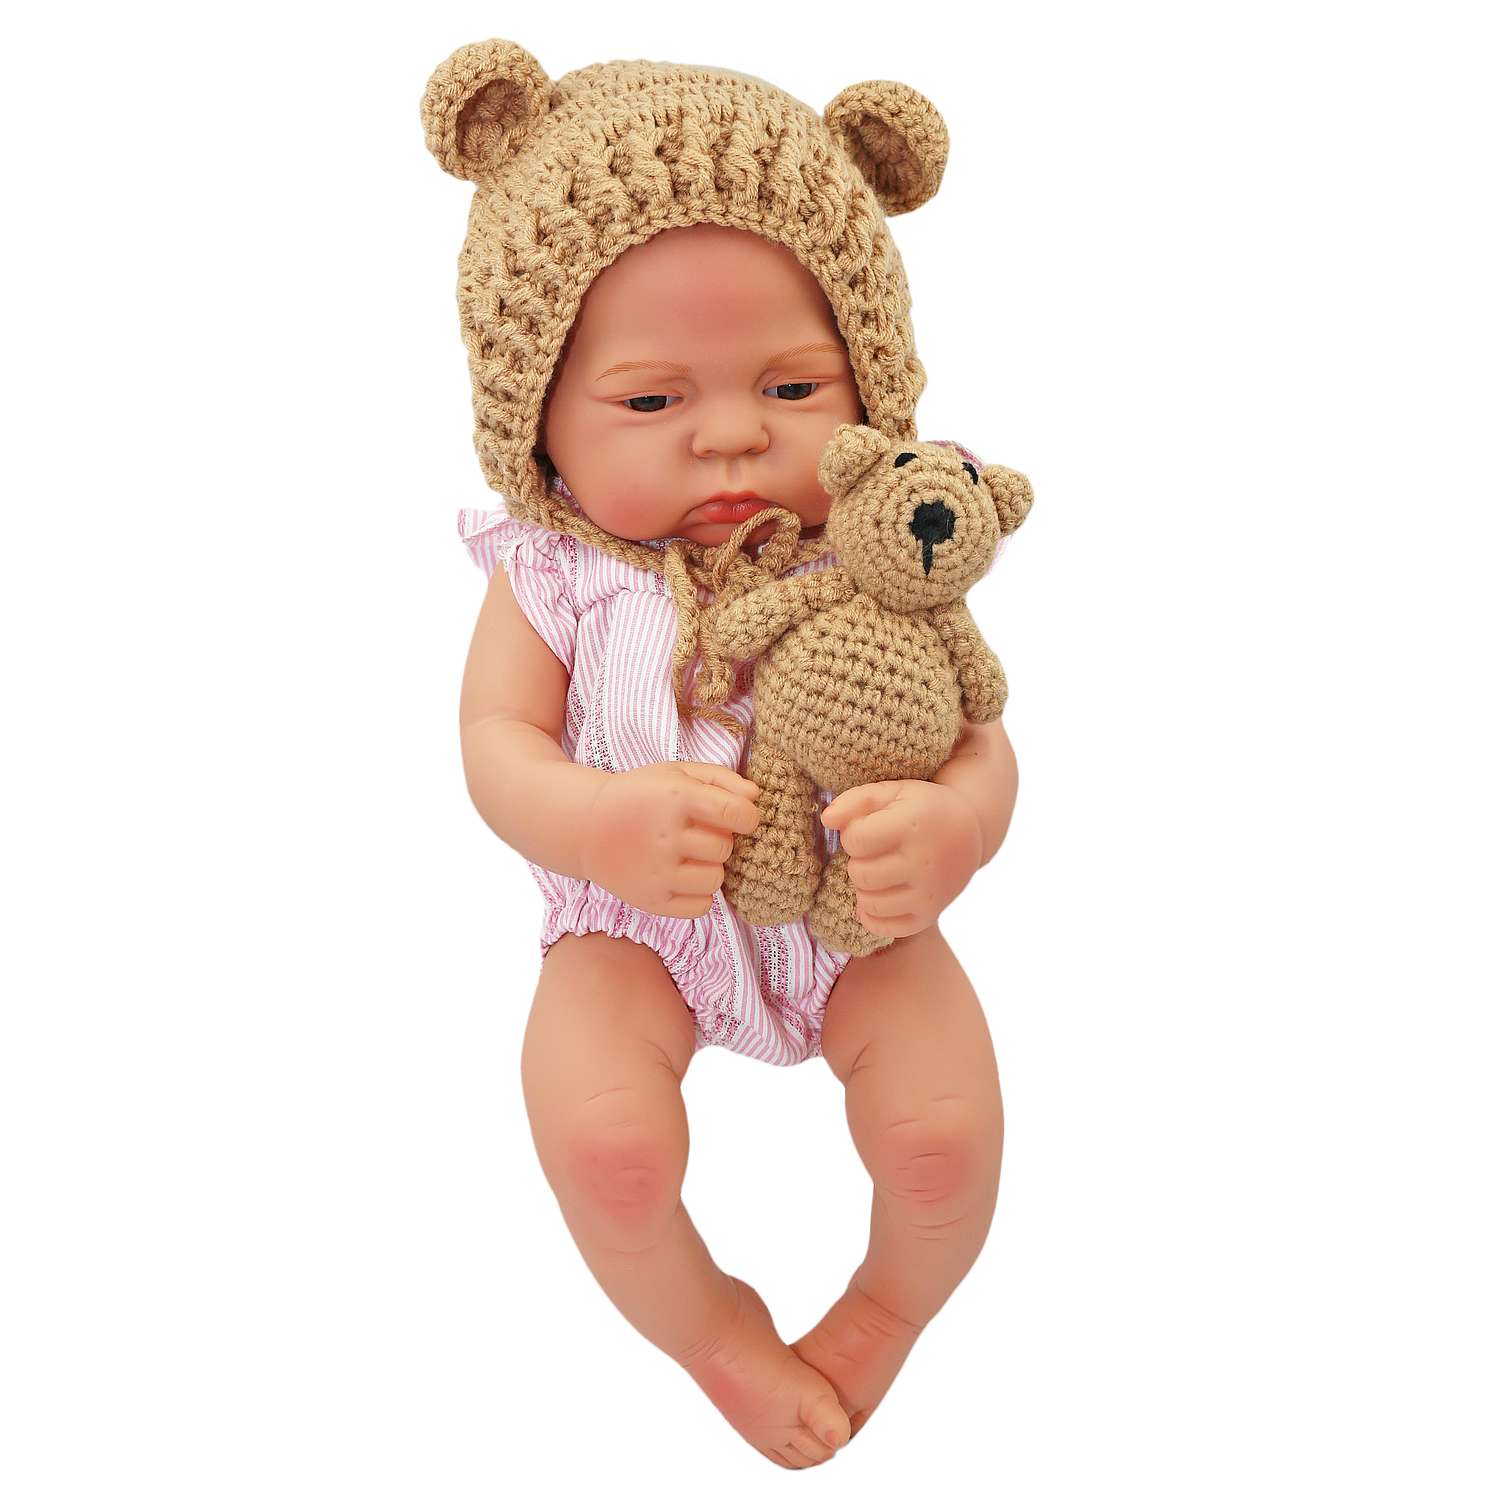 Набор для фотосессии ребенка SHARKTOYS от 0 до 3 месяцев мягкая игрушка мишка и шапочка 3570001 - фото 5